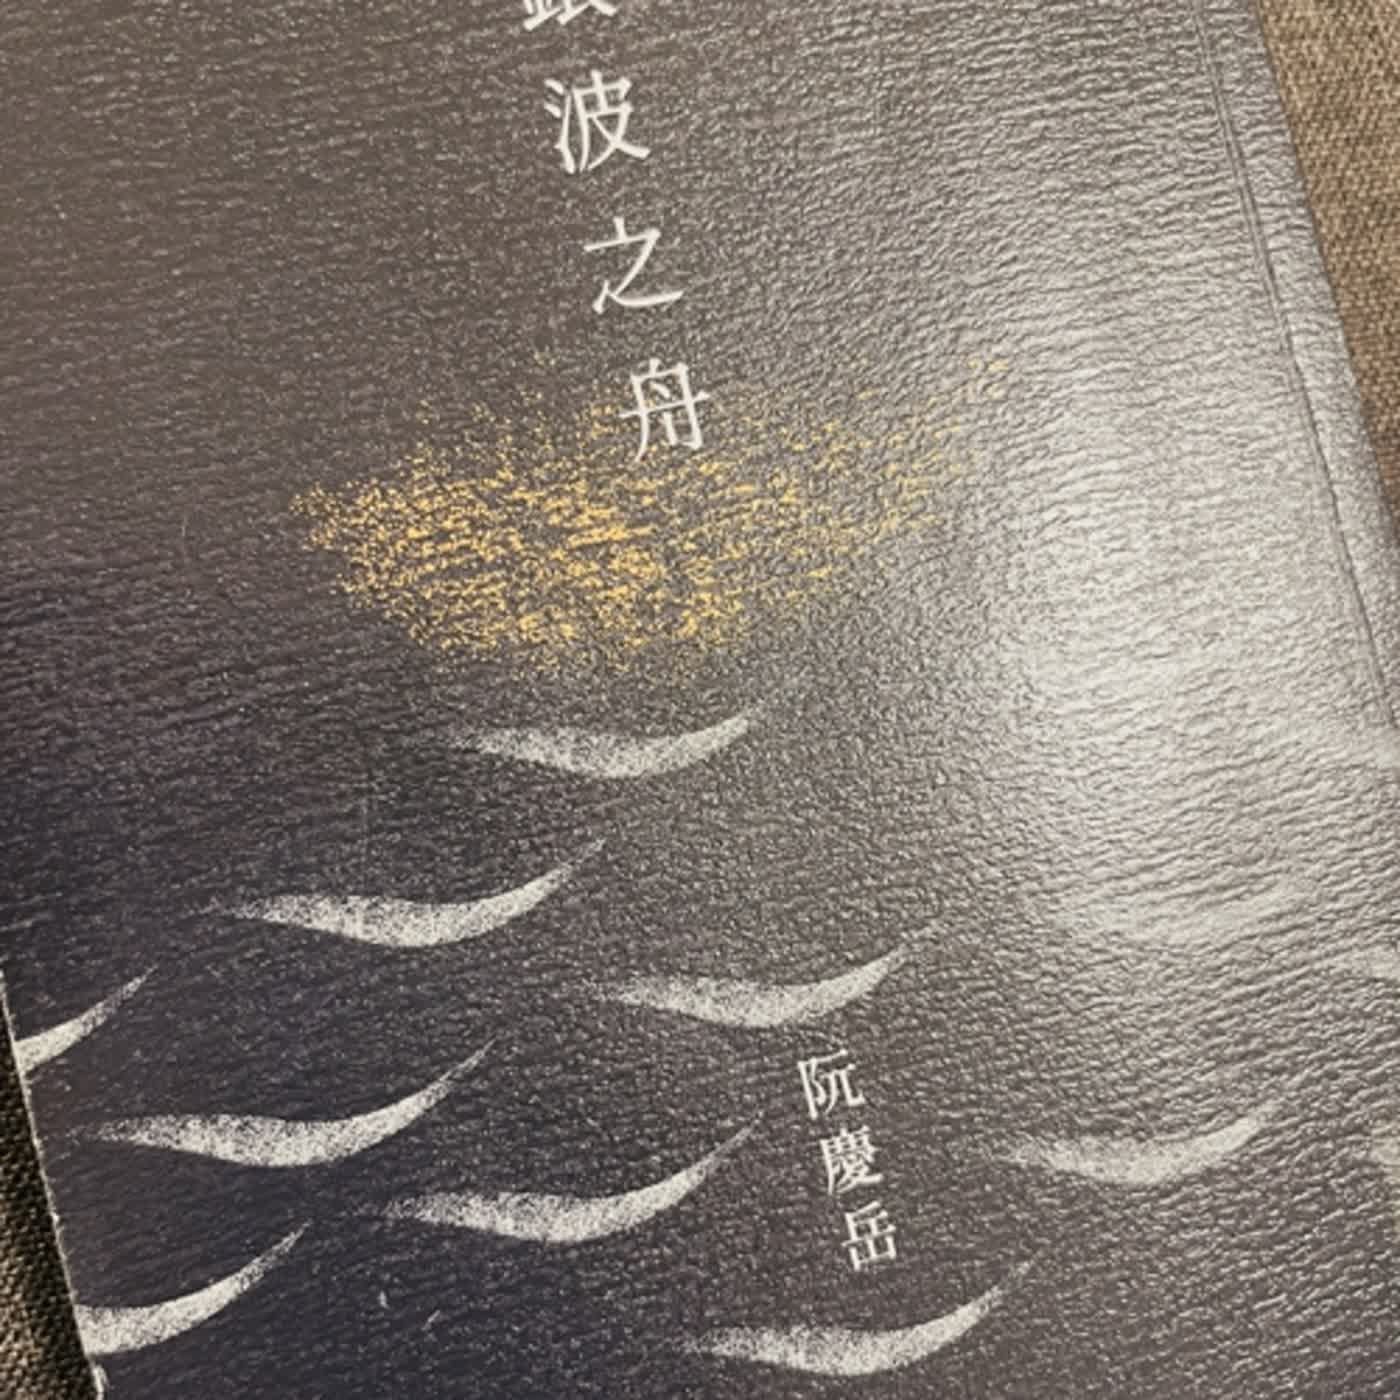 記憶的幻夢長廊-小說「銀波之舟」/阮慶岳